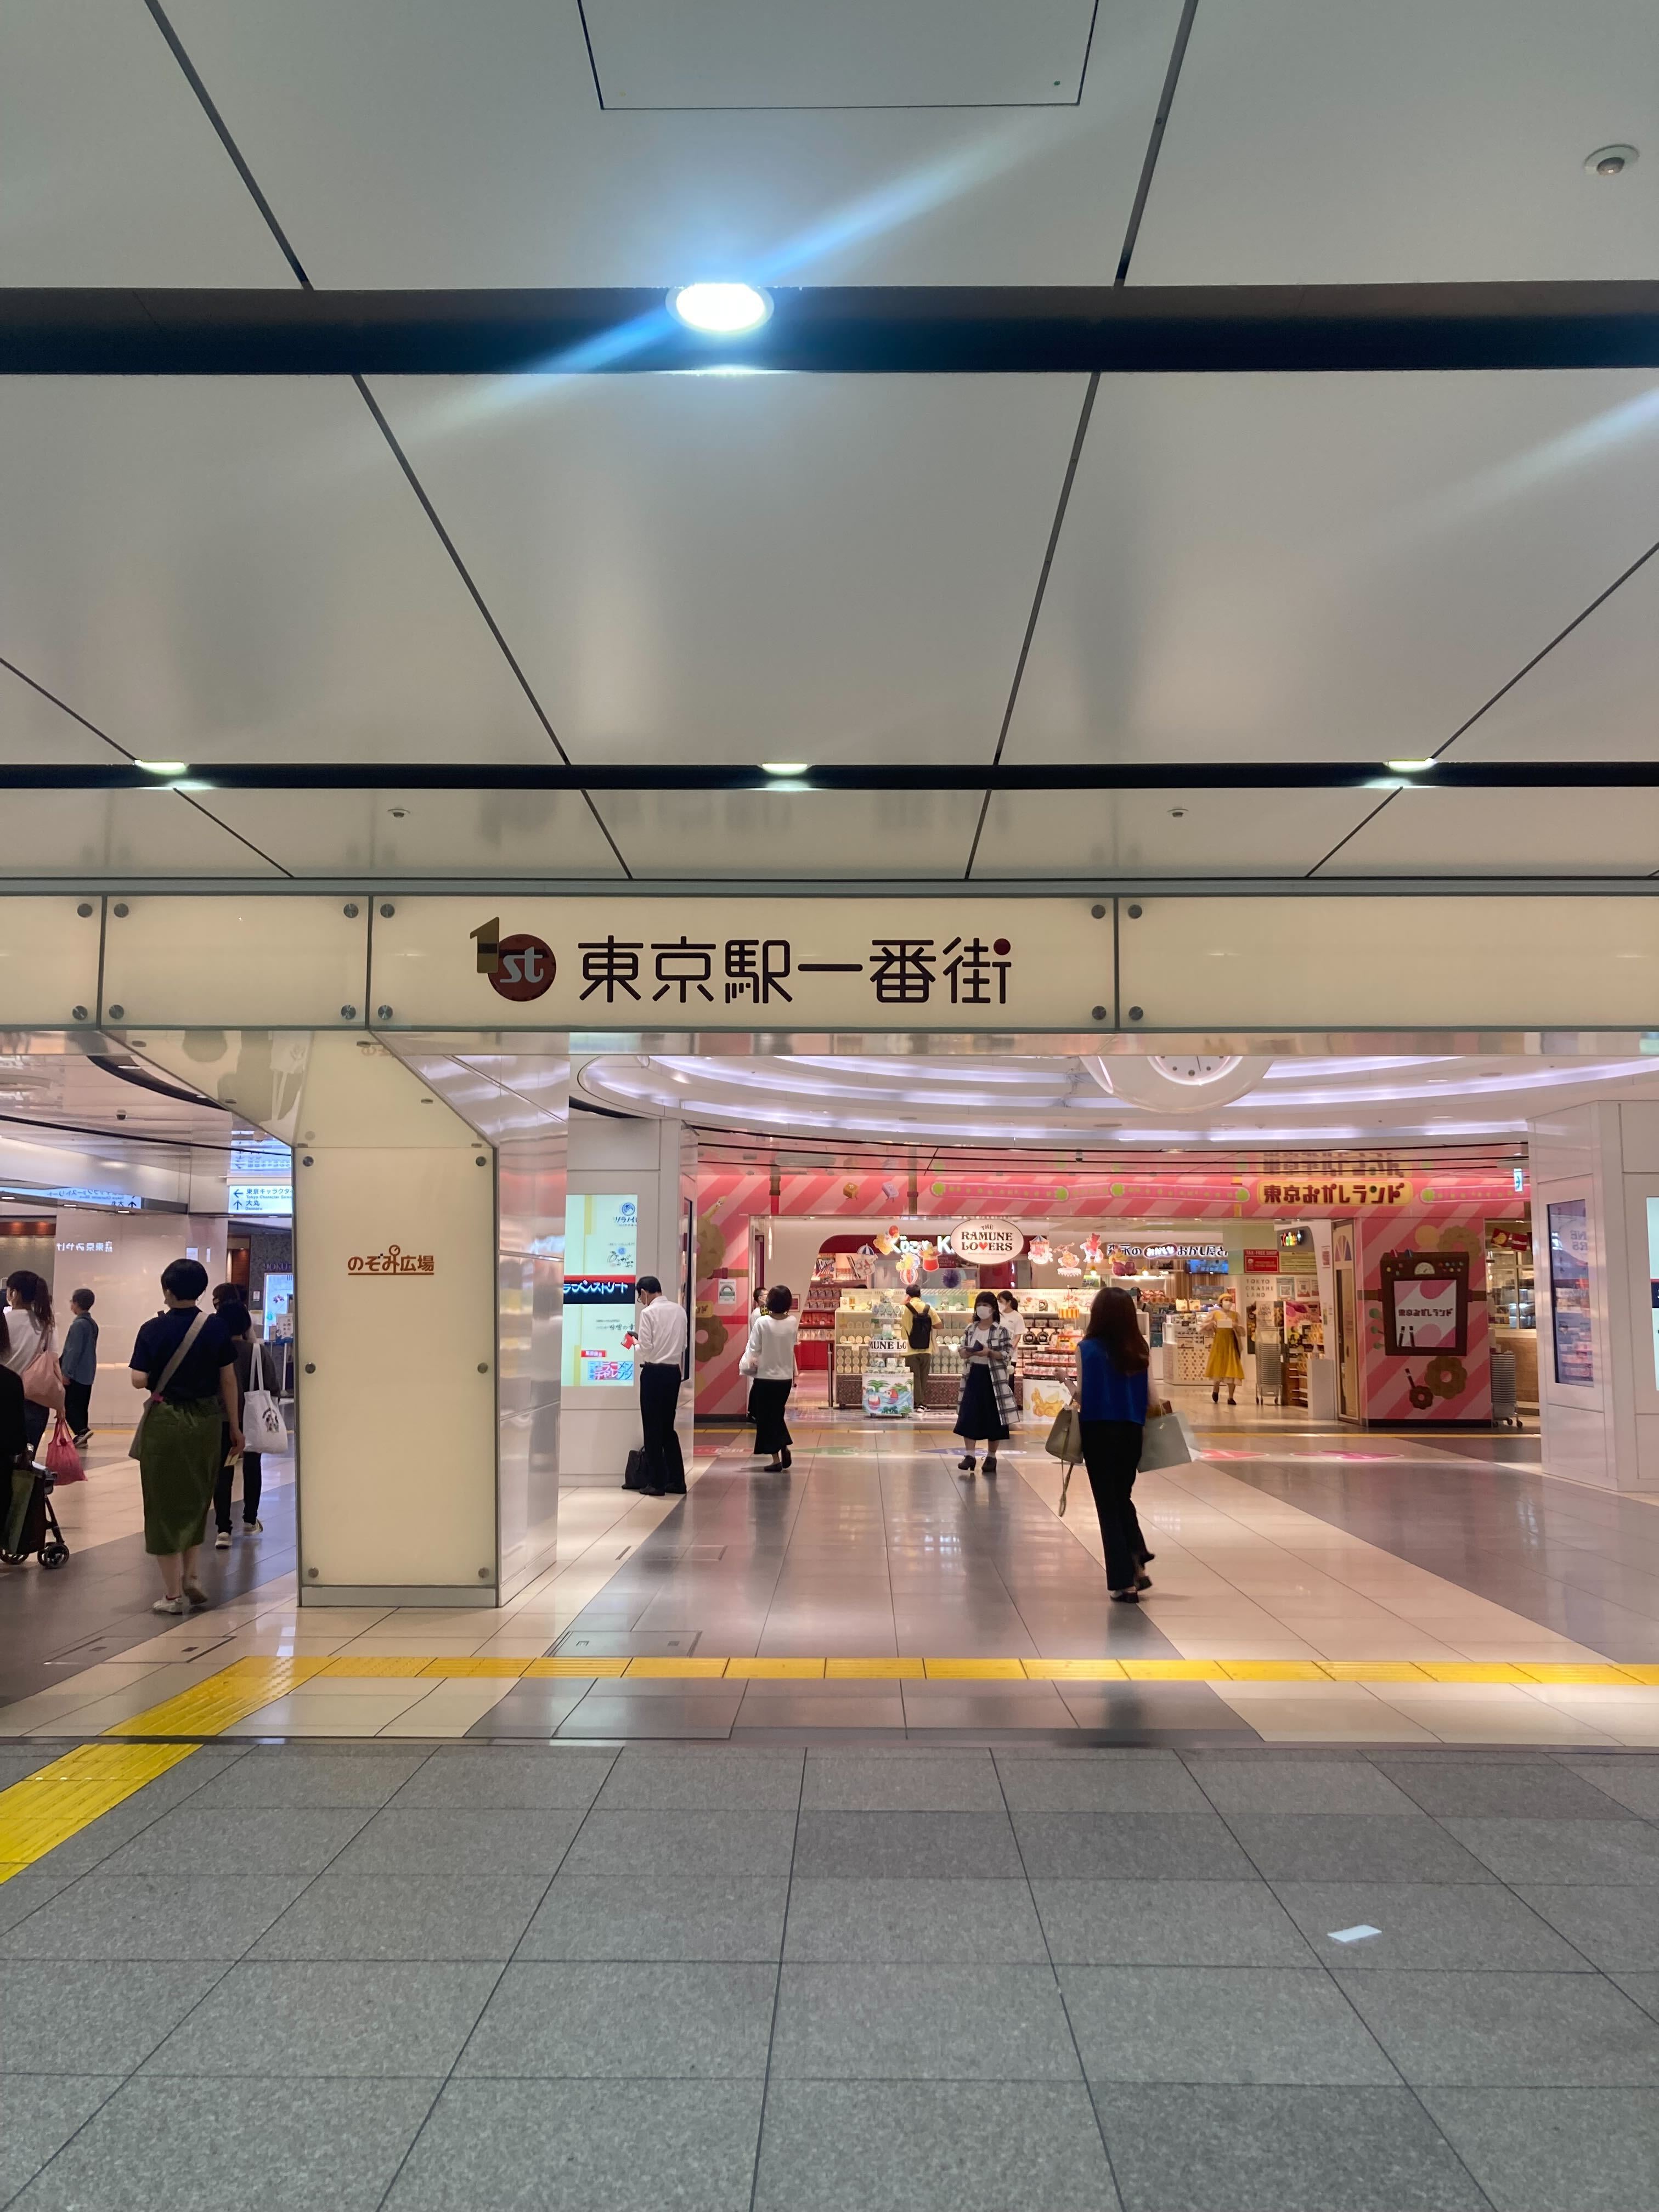 8 29更新 東京駅の喫煙所の最新情報を紹介 丸の内北改札の喫煙所は閉鎖中 さがすもーく